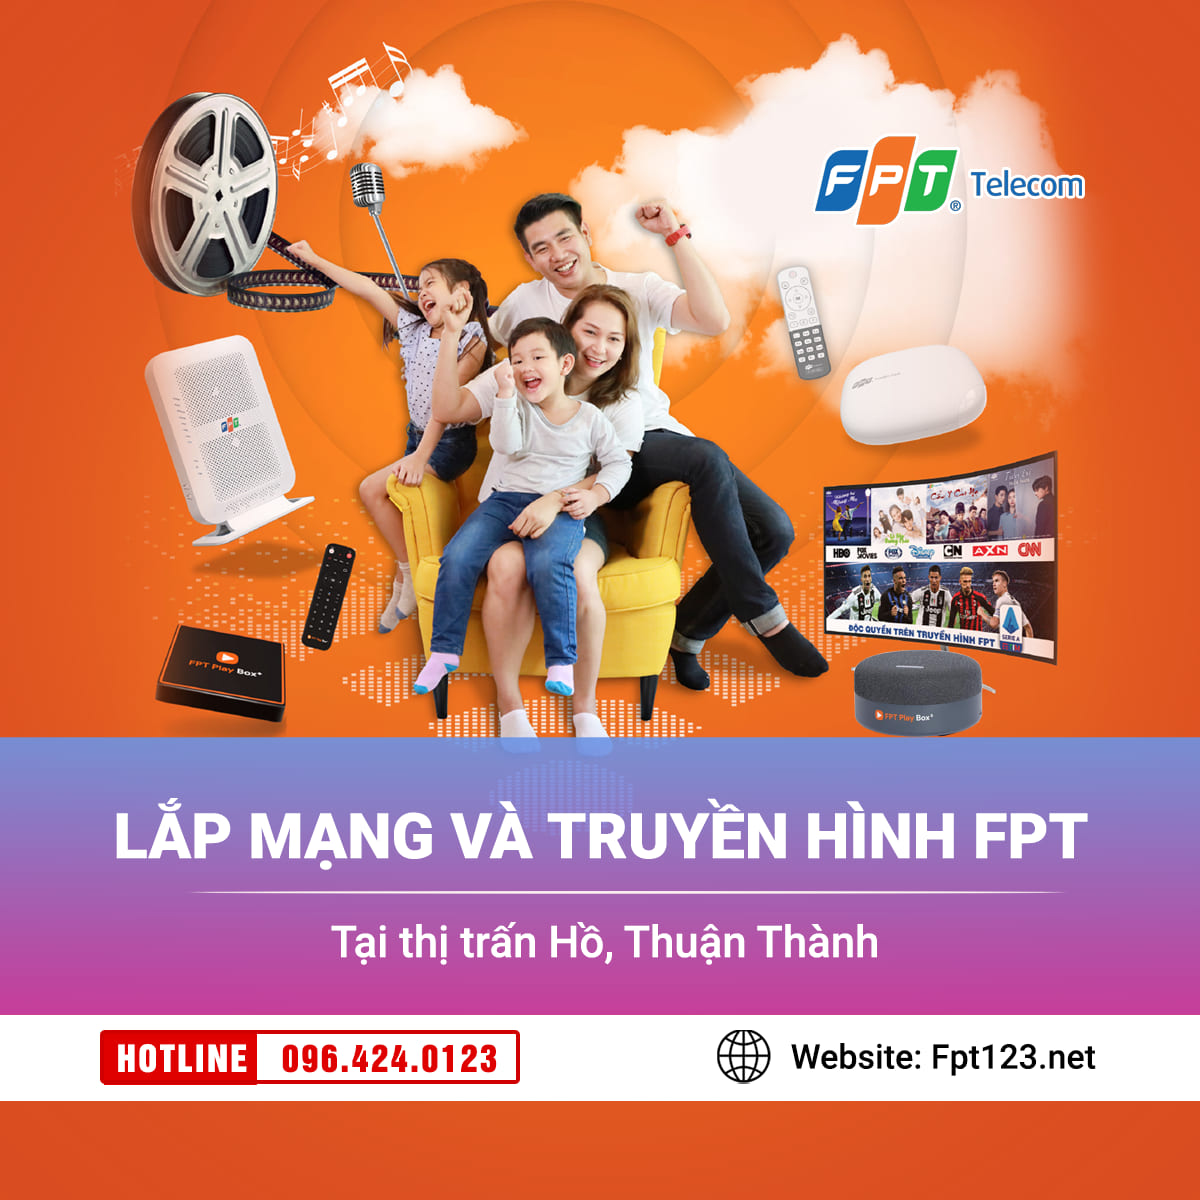 Lắp mạng và truyền hình FPT thị trấn Hồ, Thuận Thành